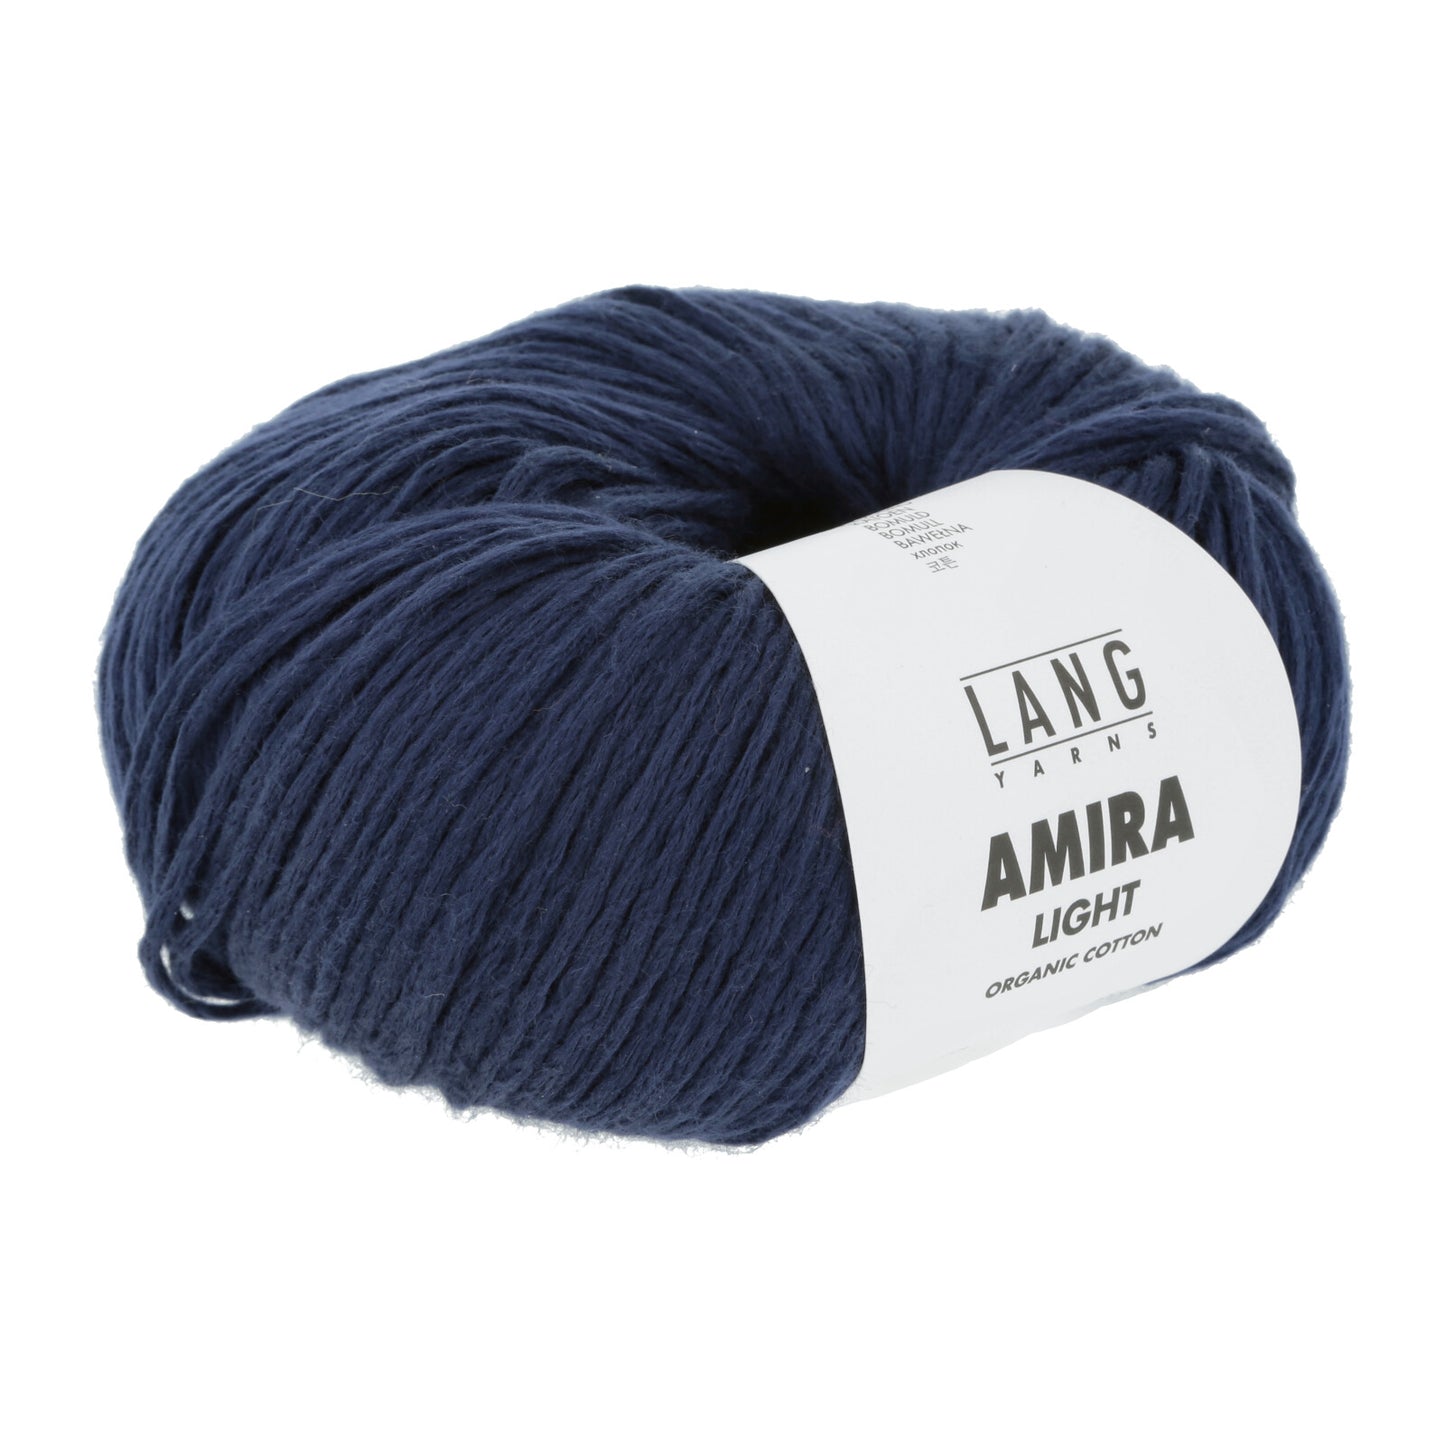 Amira Light | Lang Yarns